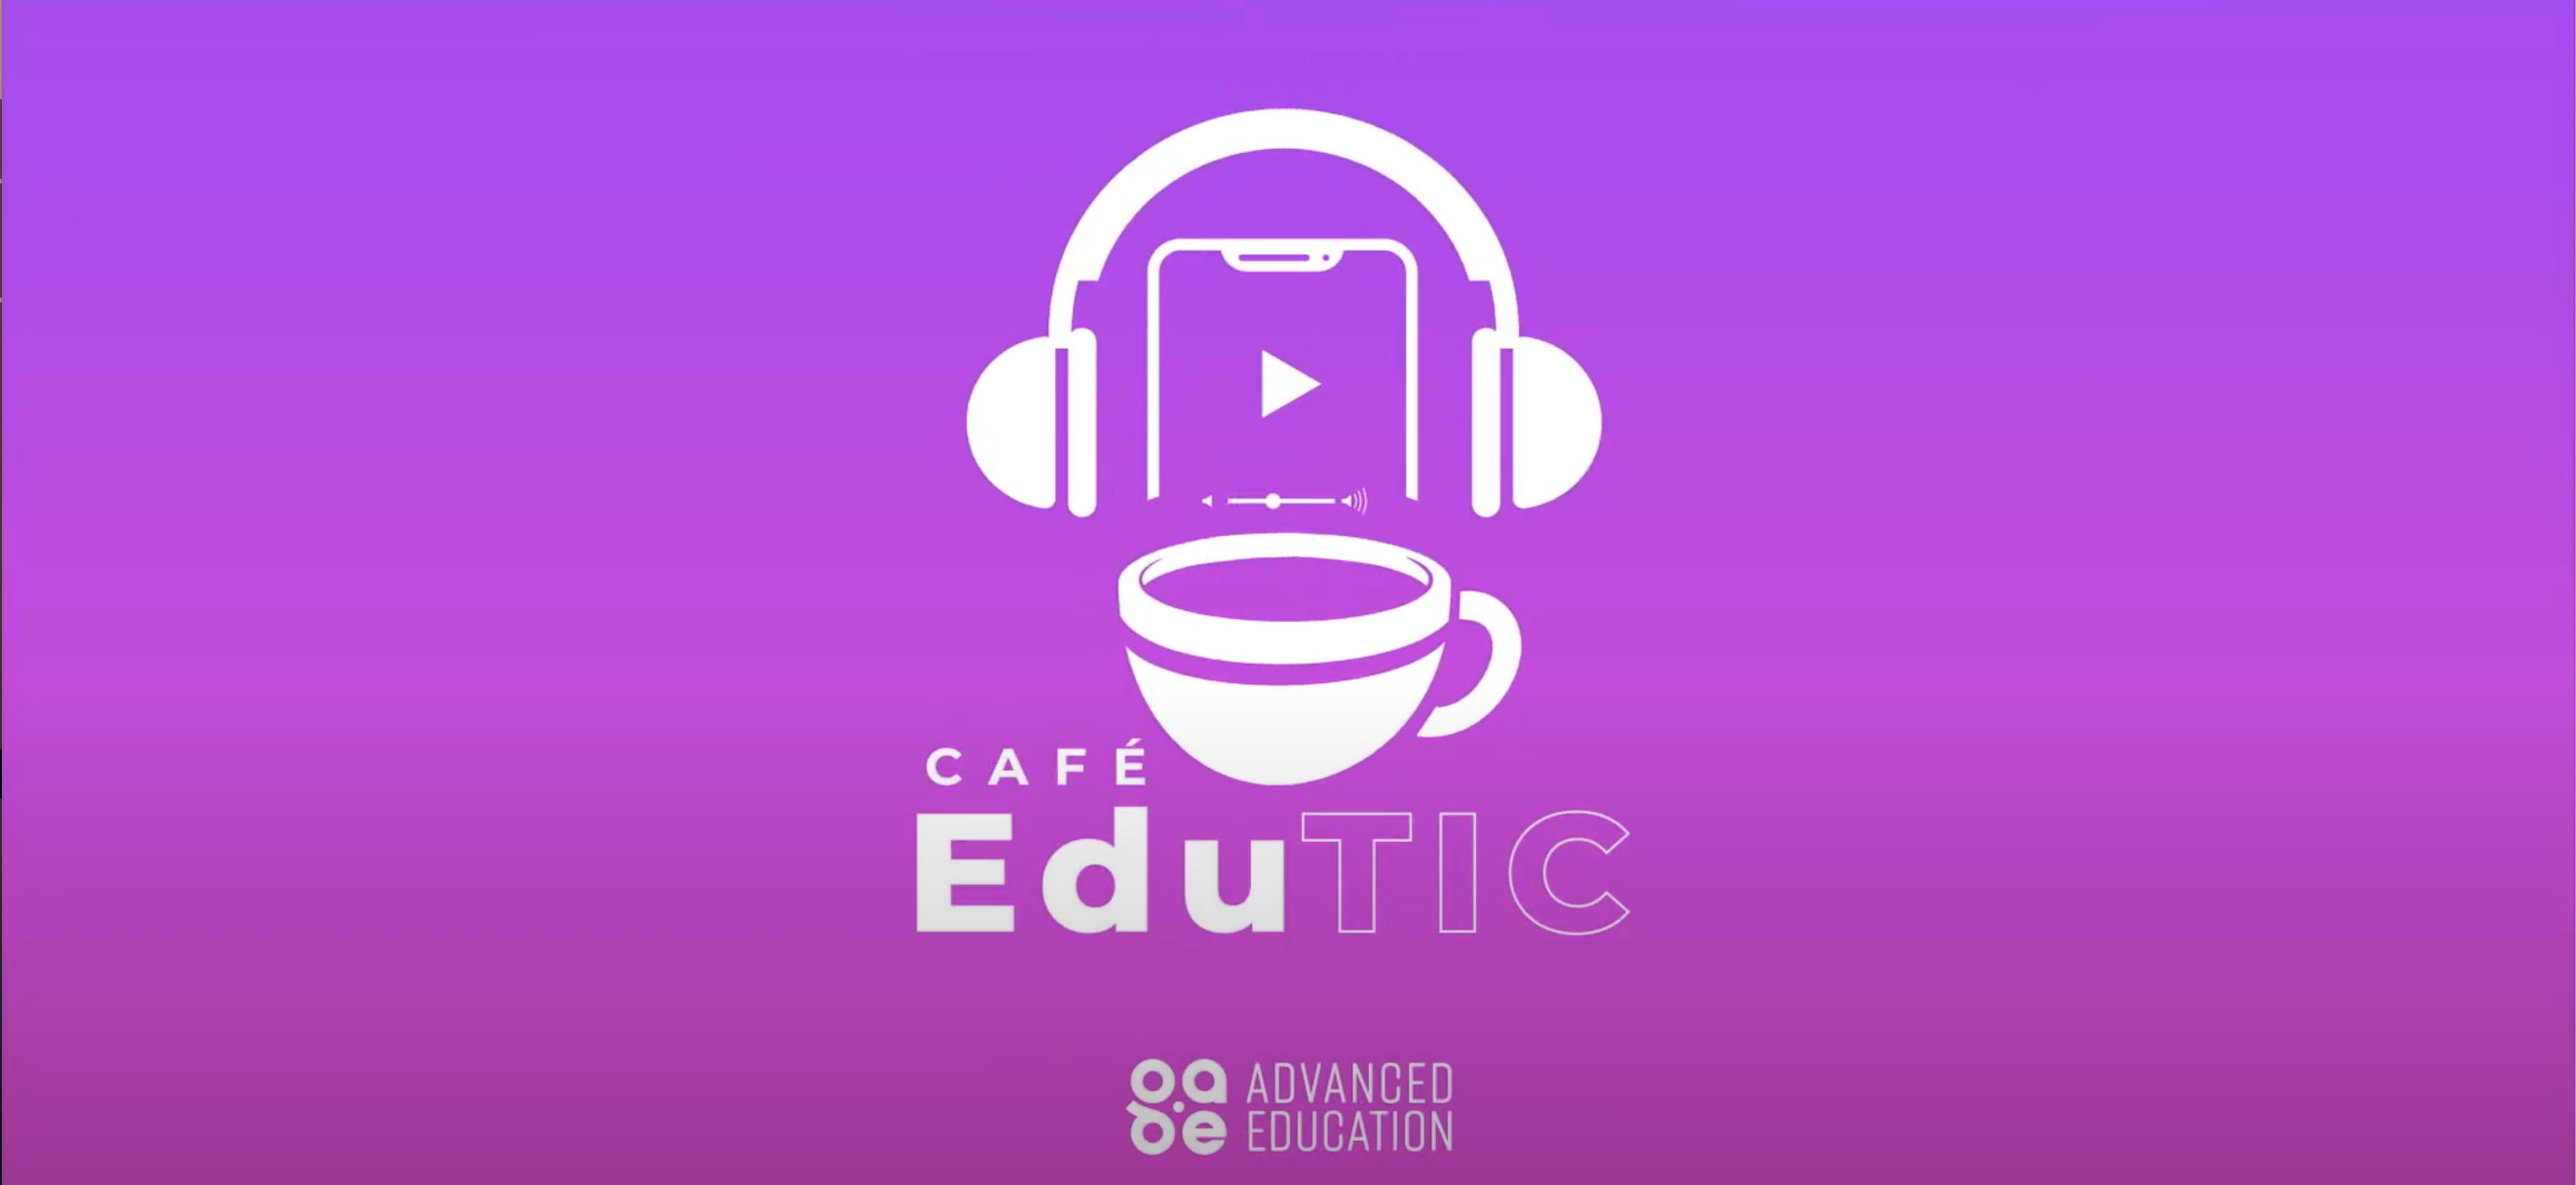 ¿Conoces "Café Edu Tic" de Grupo AE?